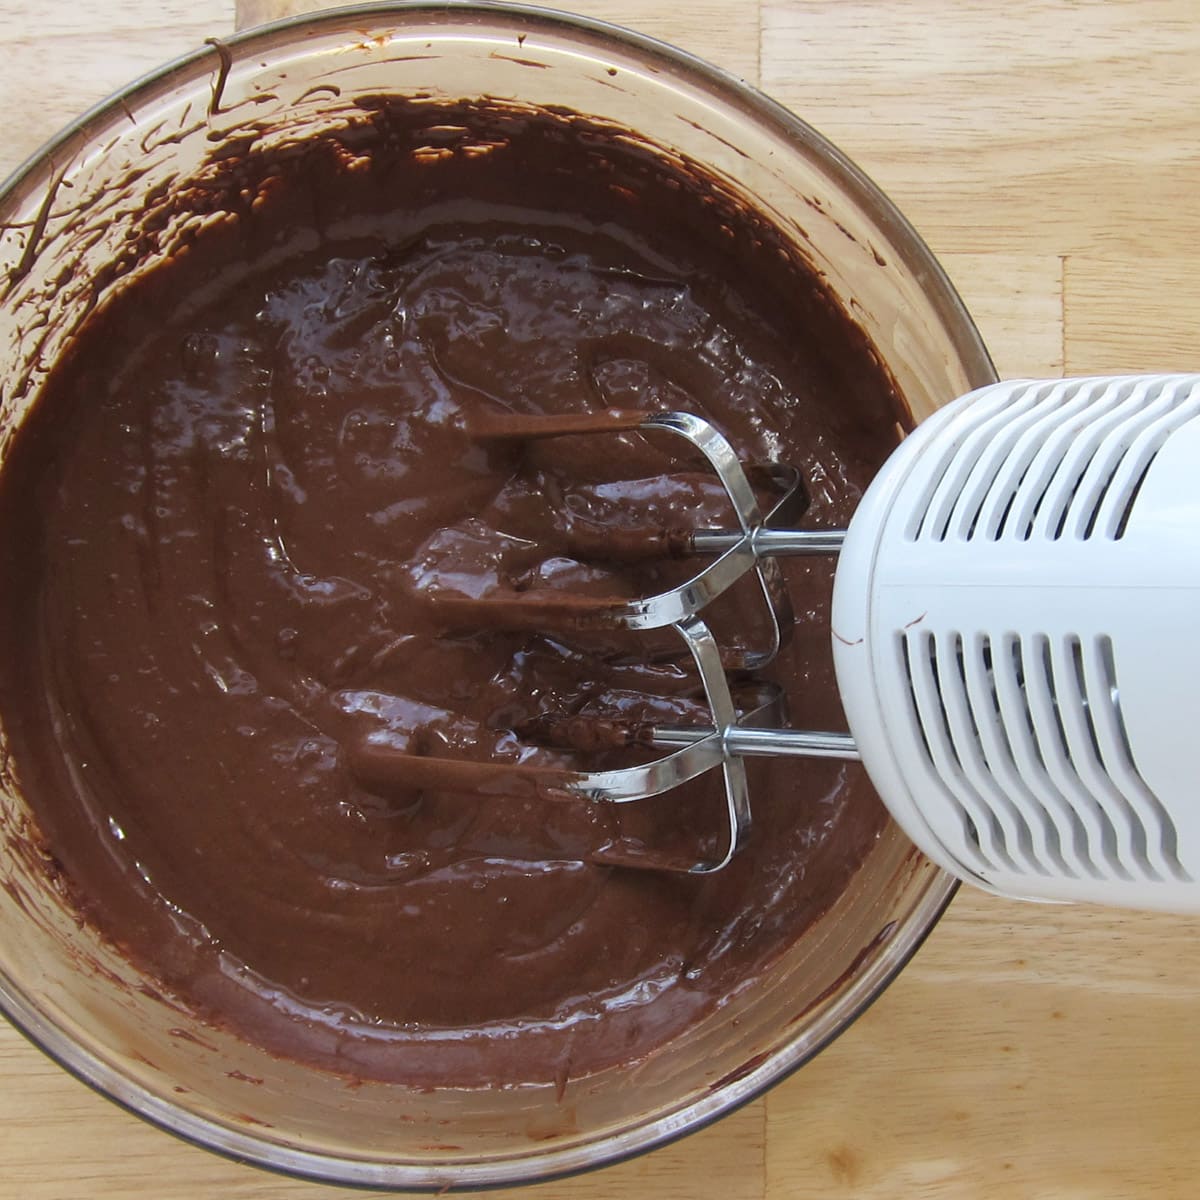 beating chocolate ganache using a hand-held mixer.